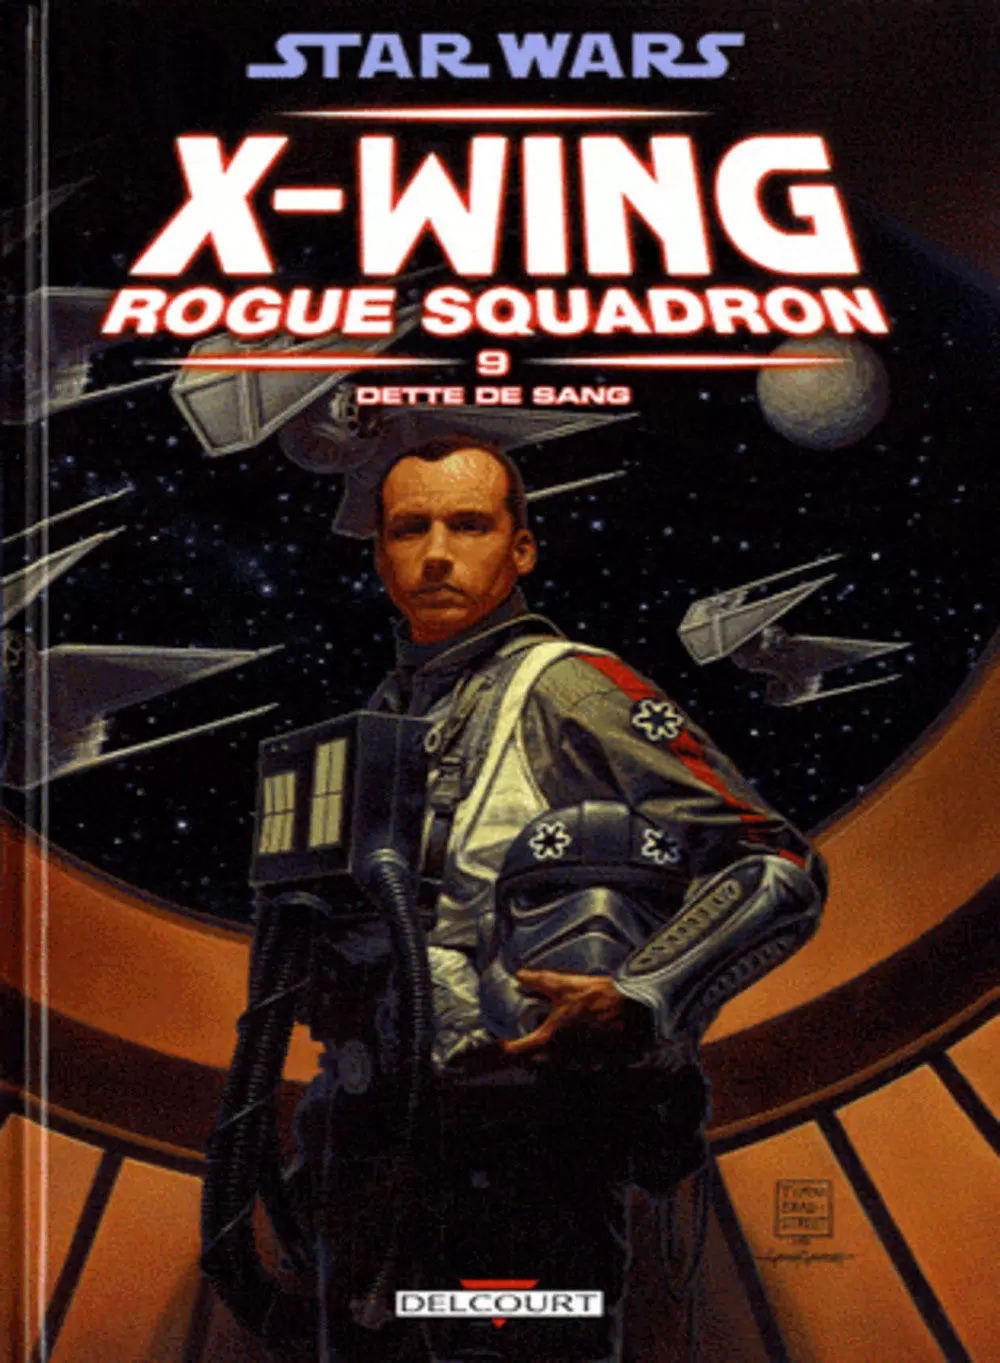 Star Wars - Delcourt - X-Wing Rogue Squadron : Dette de sang